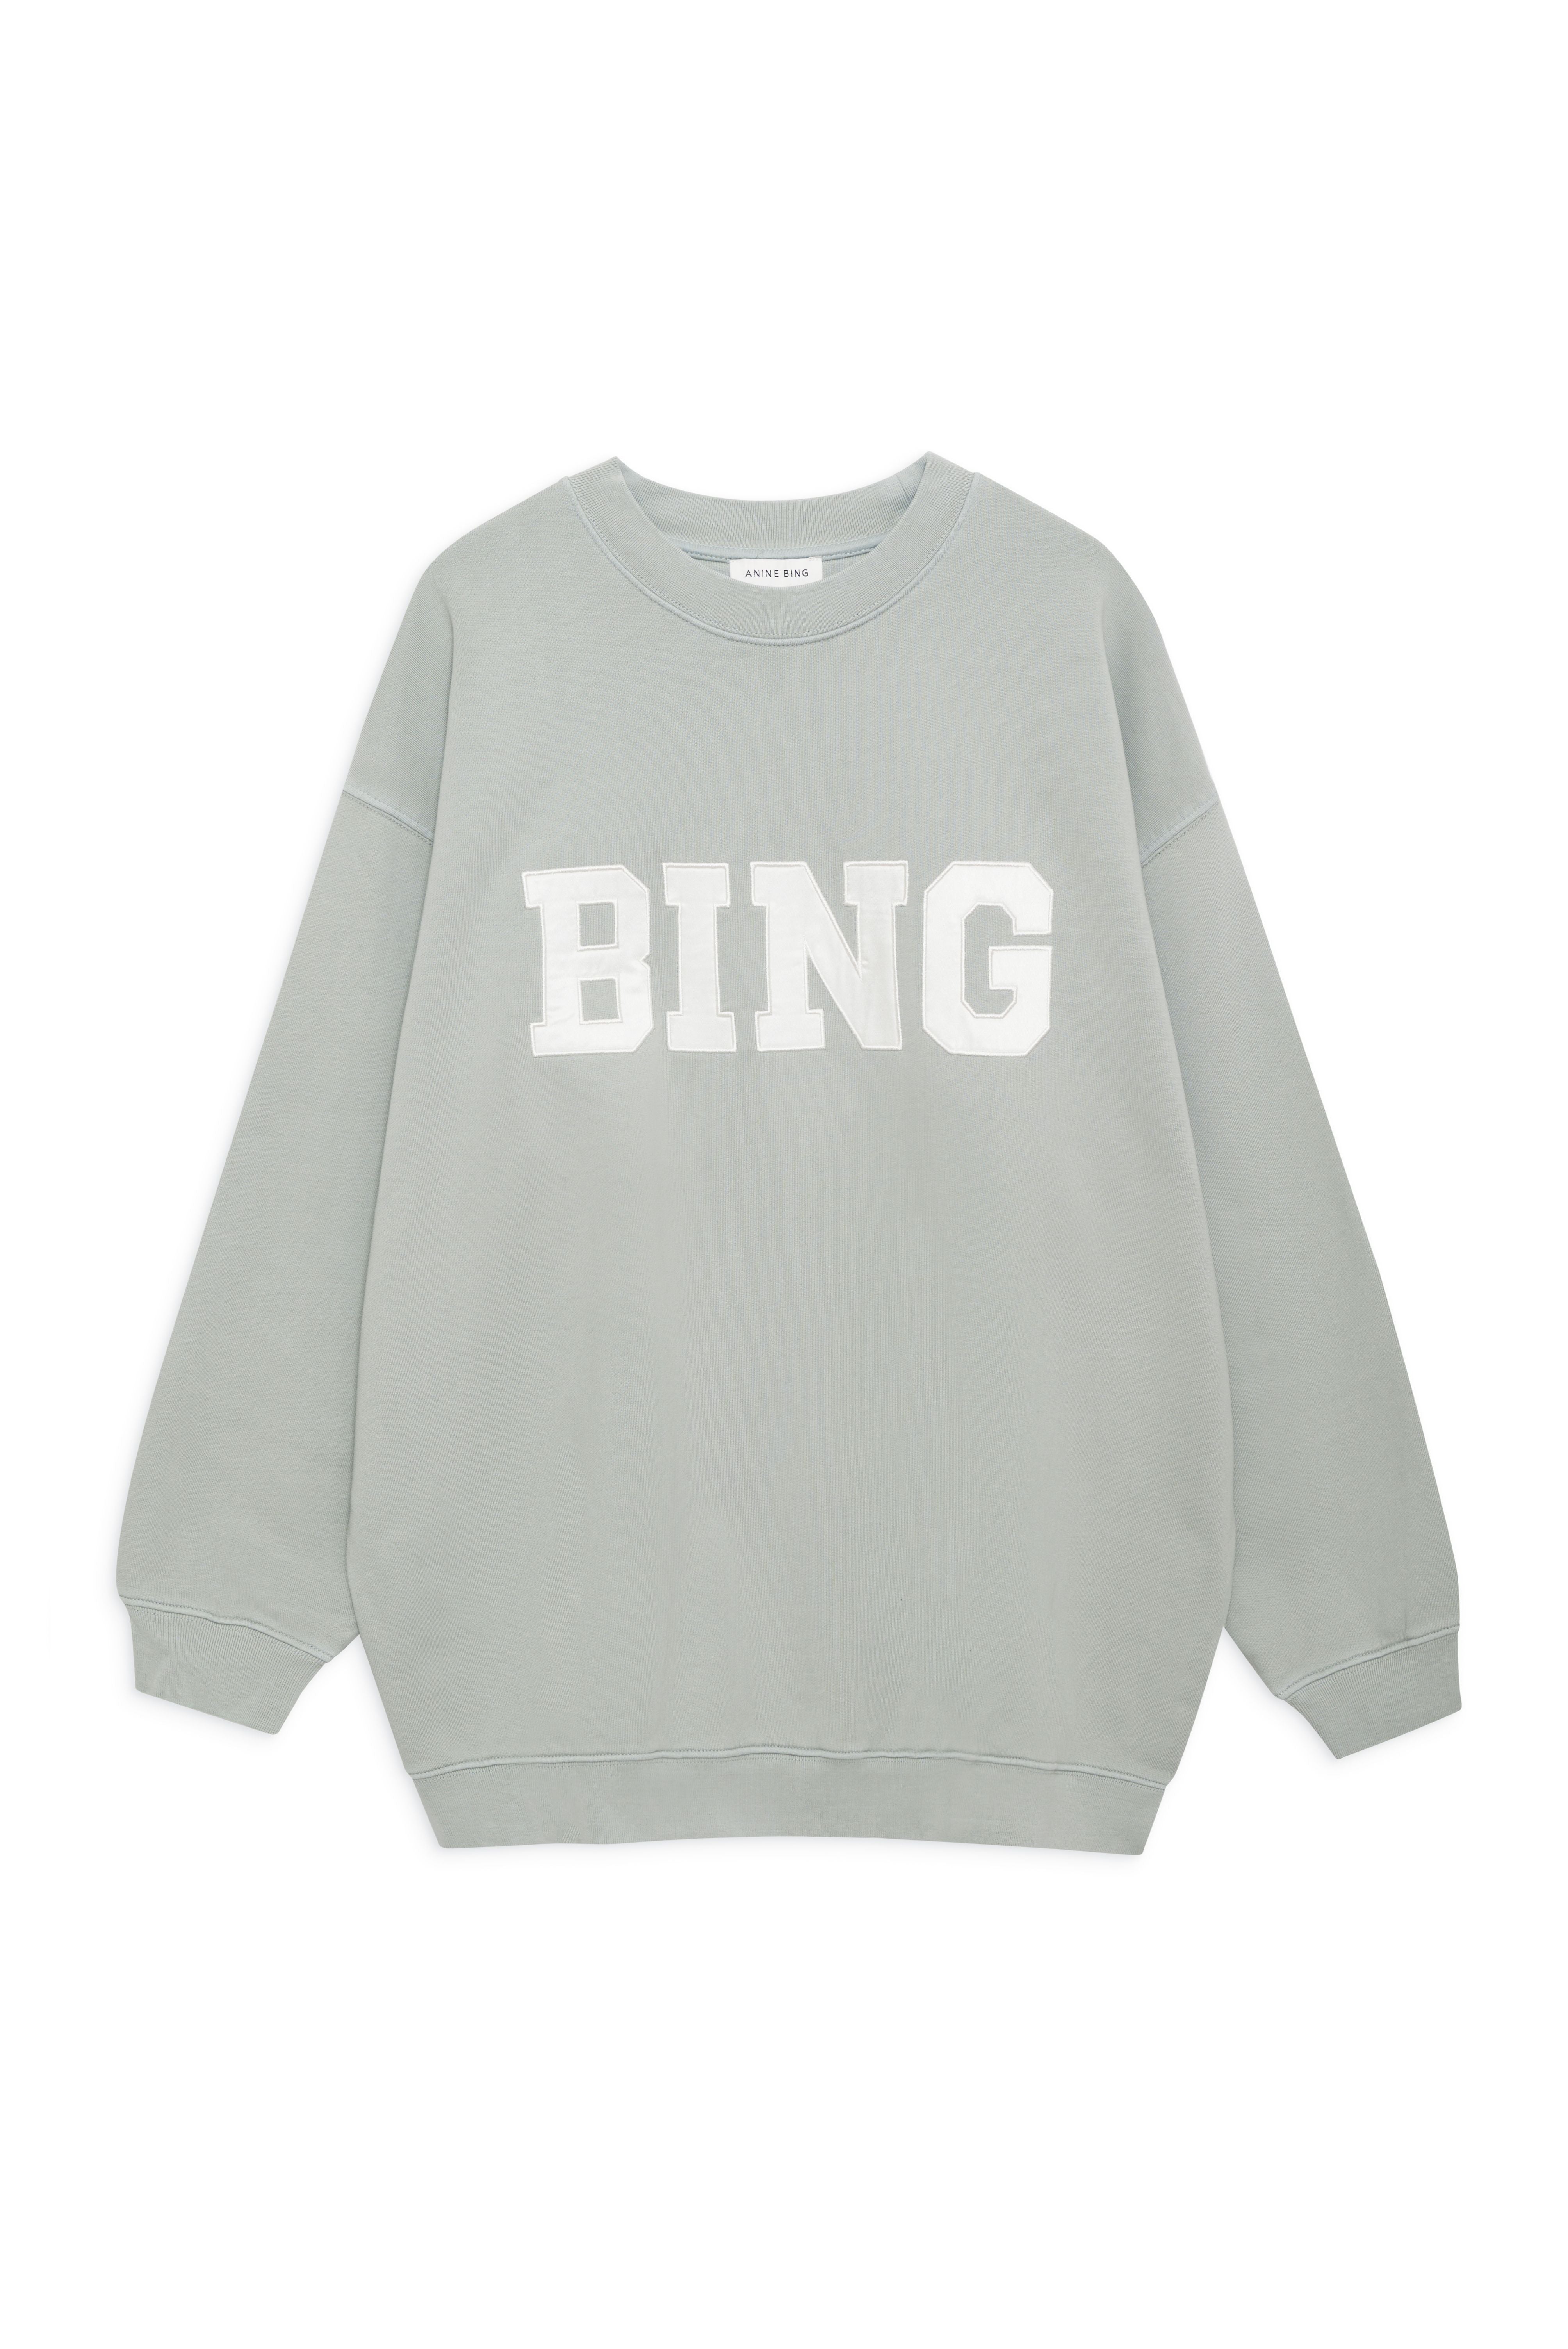 Anine Bing Tyler Sweatshirt Satin BING - Sage Green